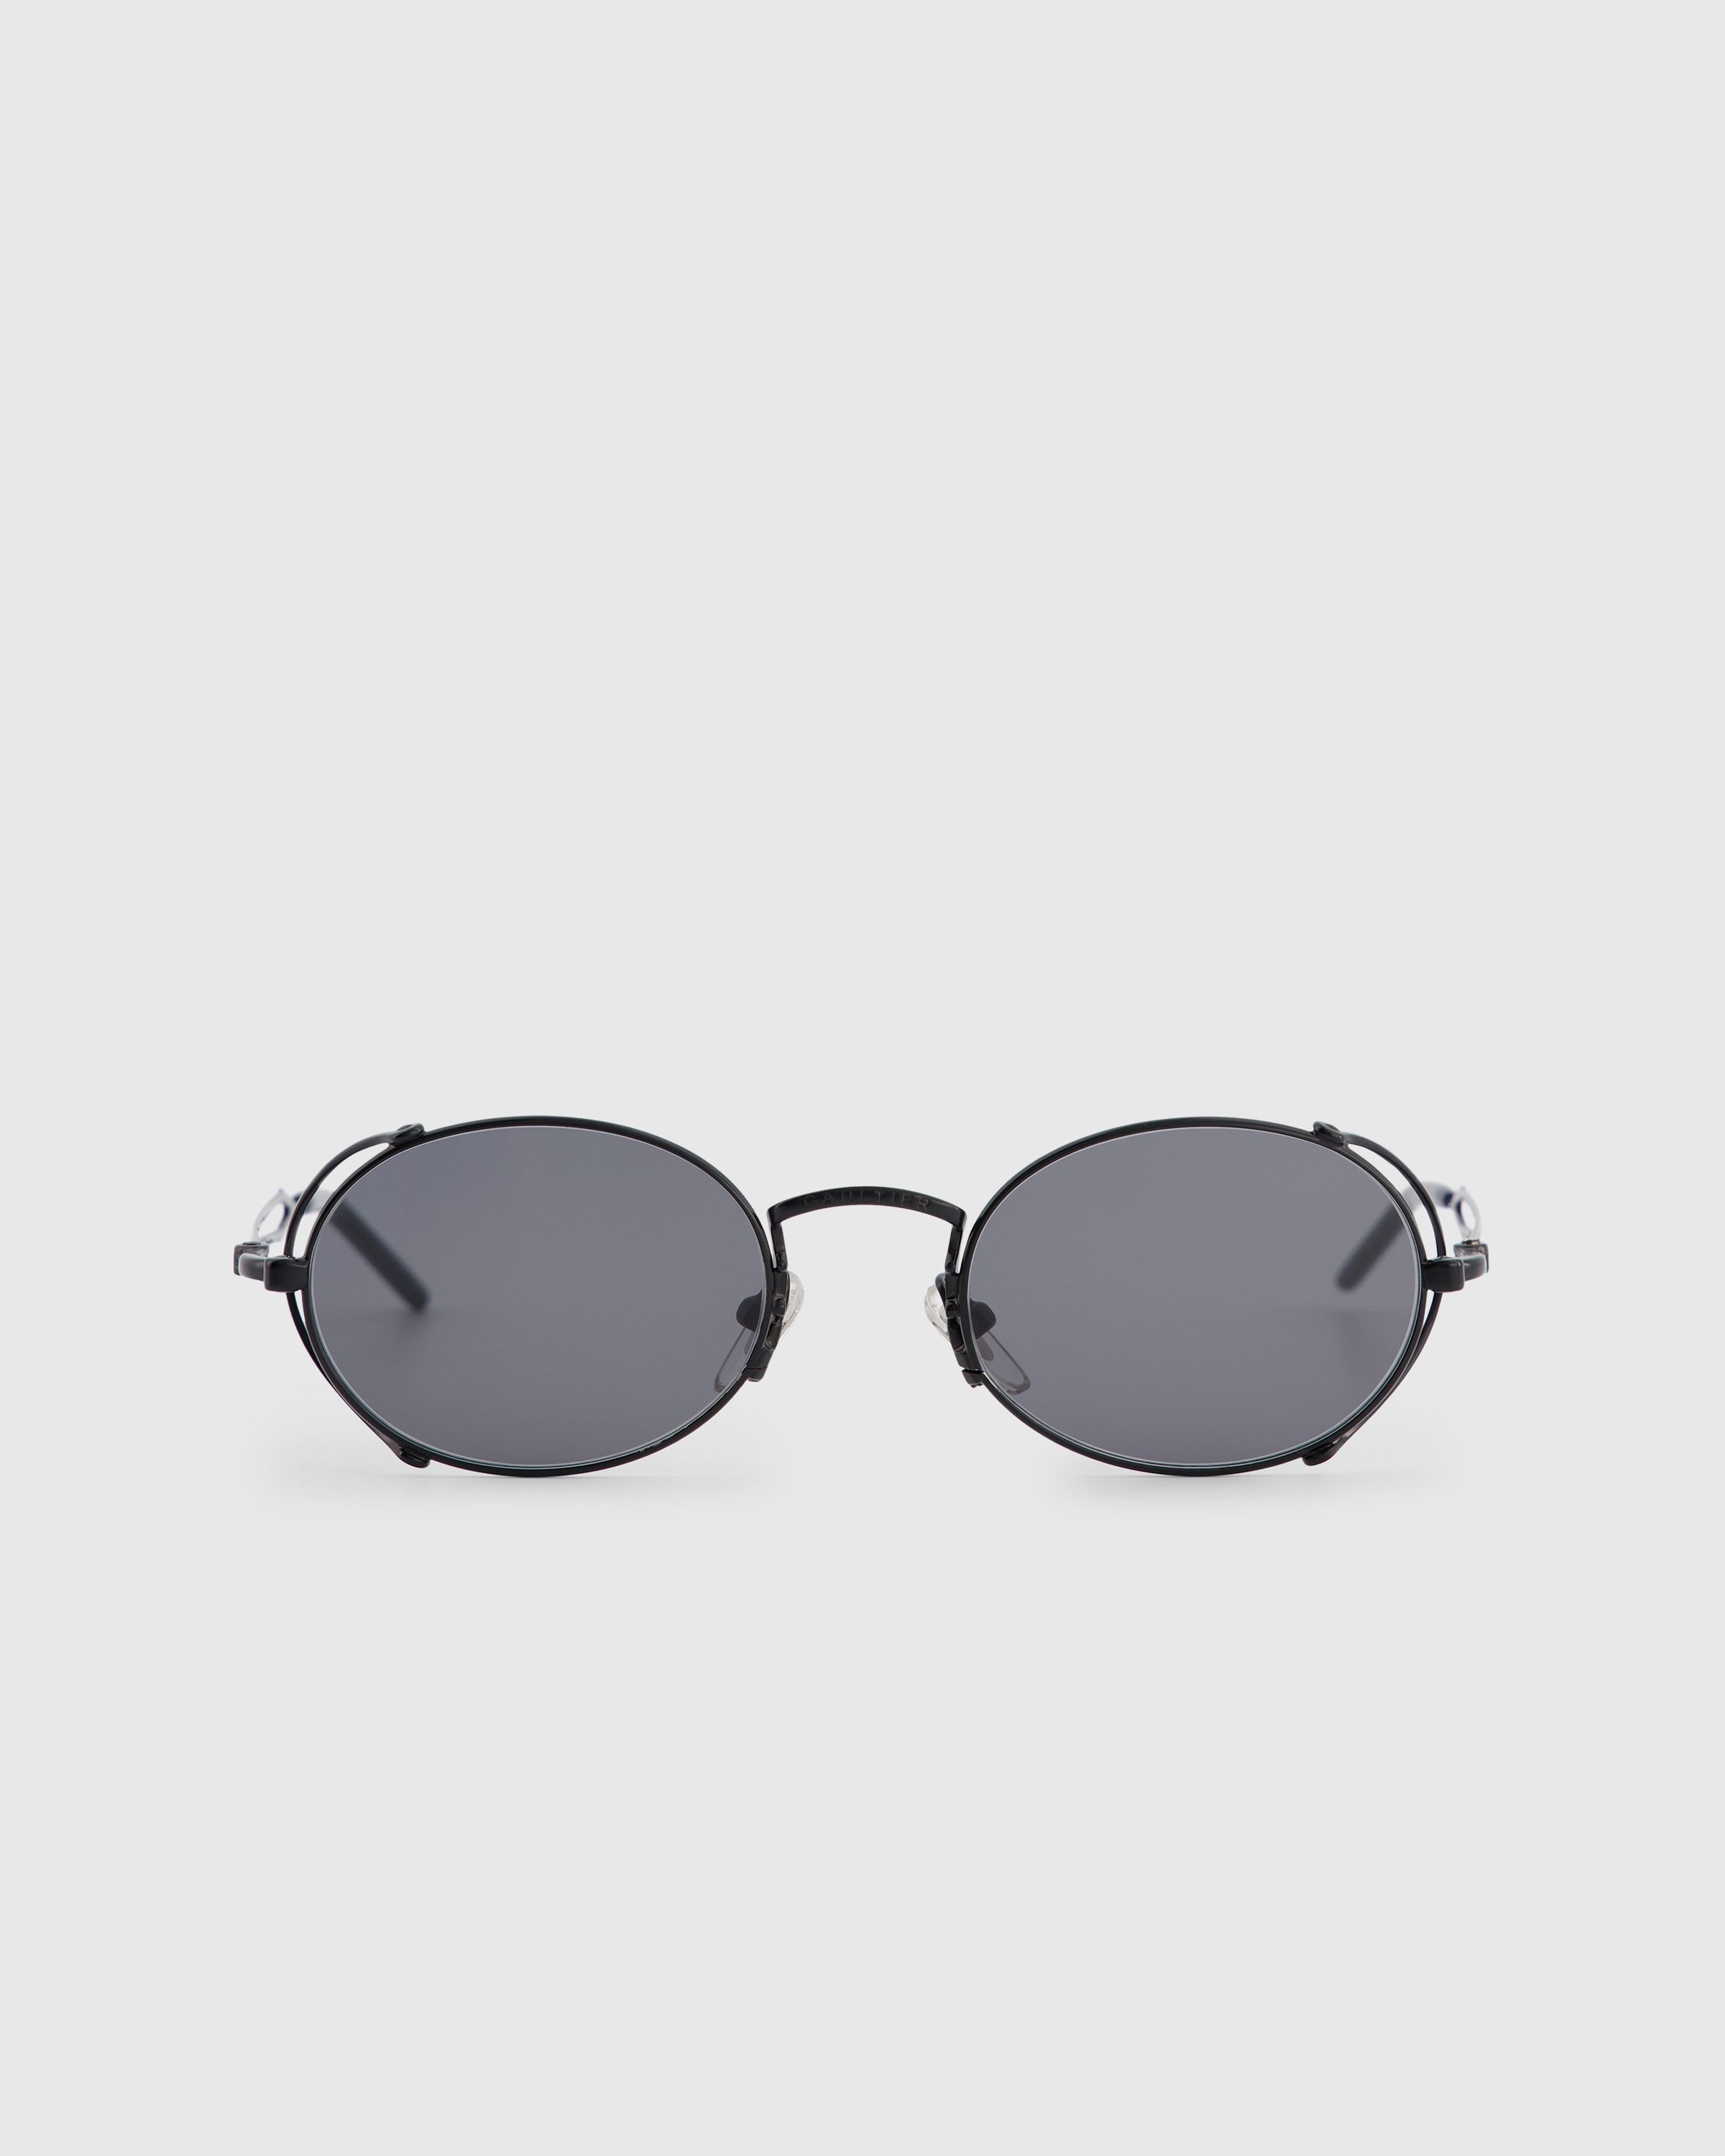 Jean Paul Gaultier x Burna Boy –  Arceau Sunglasses Black